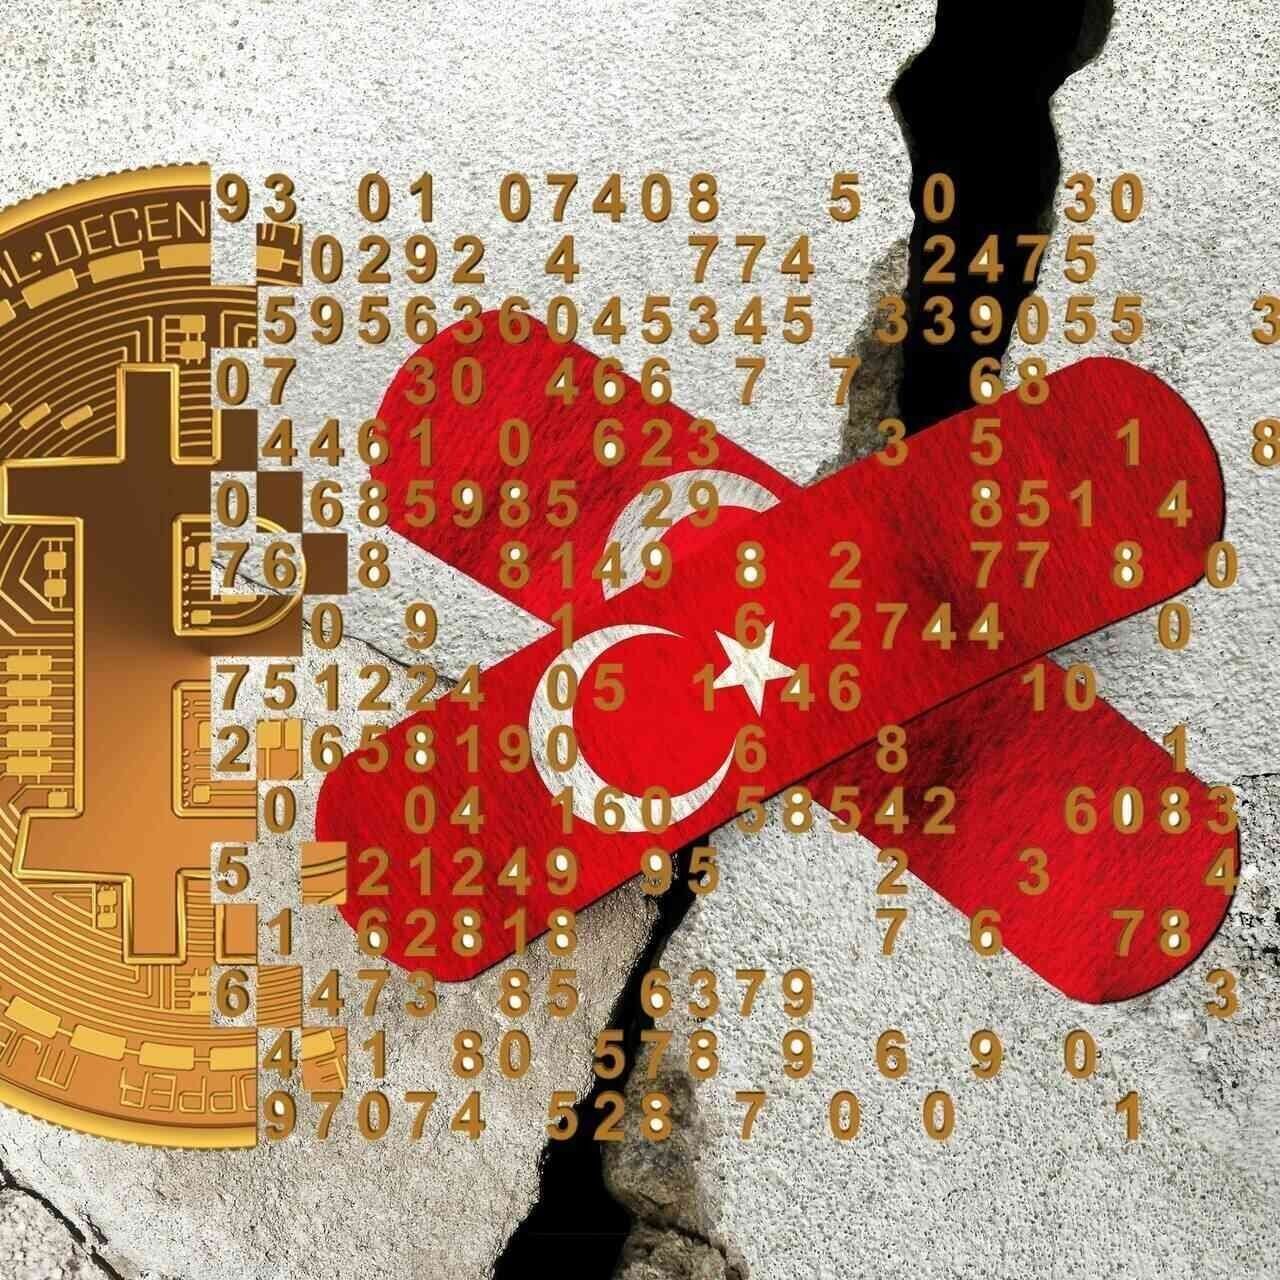 Cryptovalute: in seguito al violento terremoto avvenuto in Anatolia meridionale fra il 5 e il 6 febbraio 2023, anche l'industria globale delle cryptovalute e della Blockchain si sta impegnando ad aiutare le vittime con ingenti donazioni